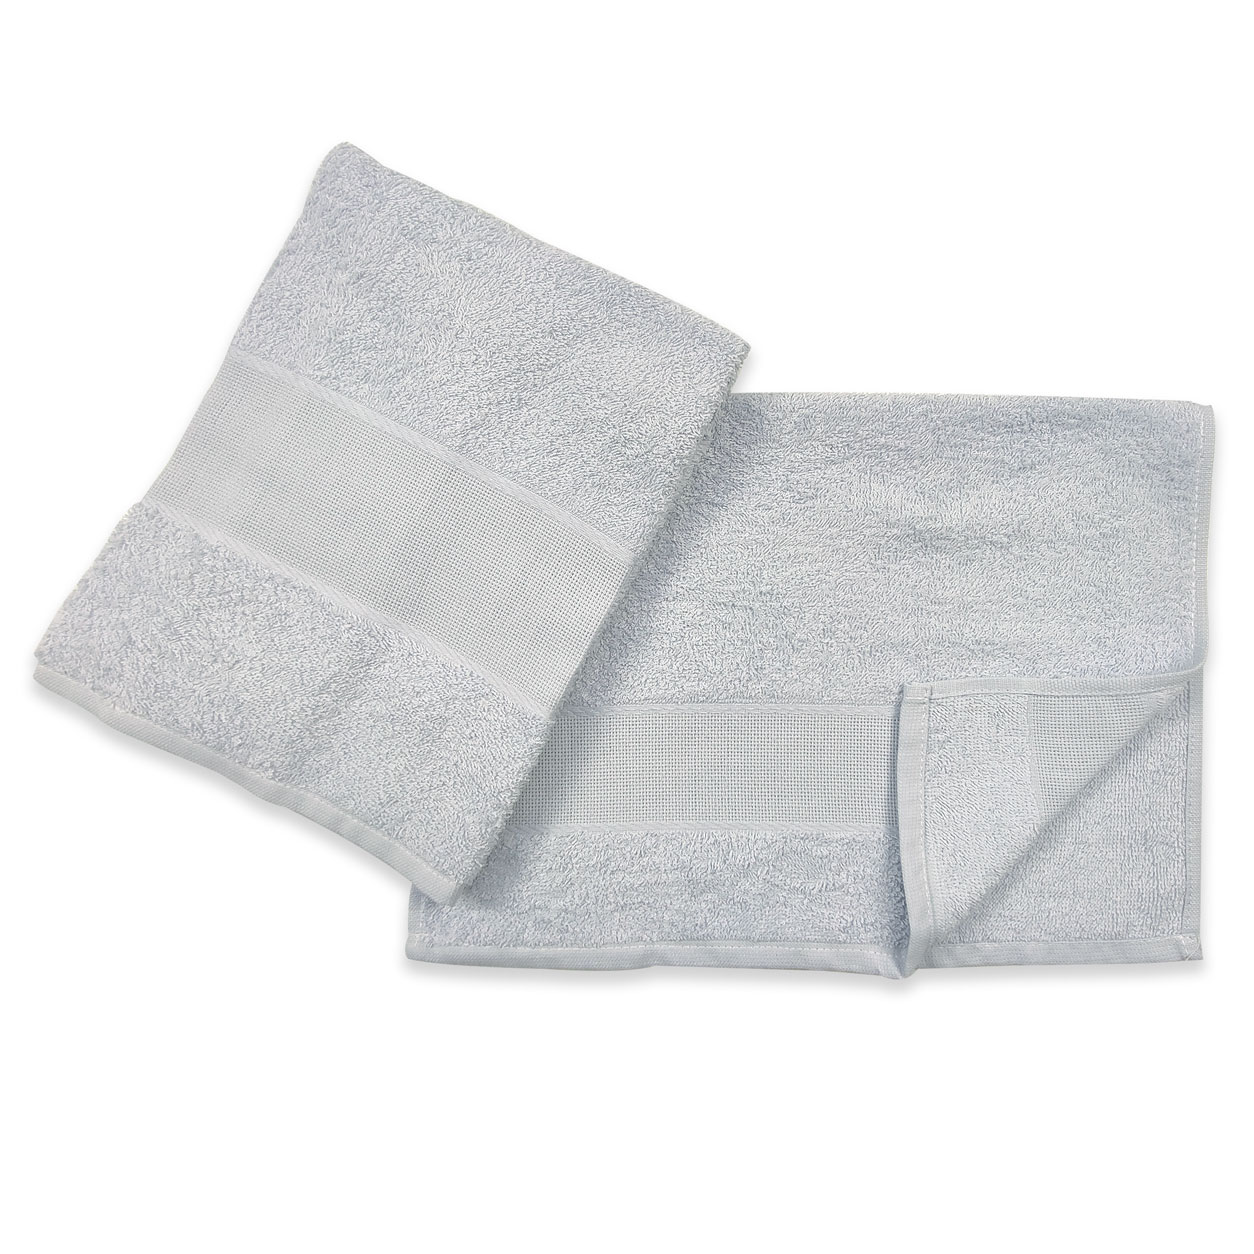 coppiola-asciugamani-grigi